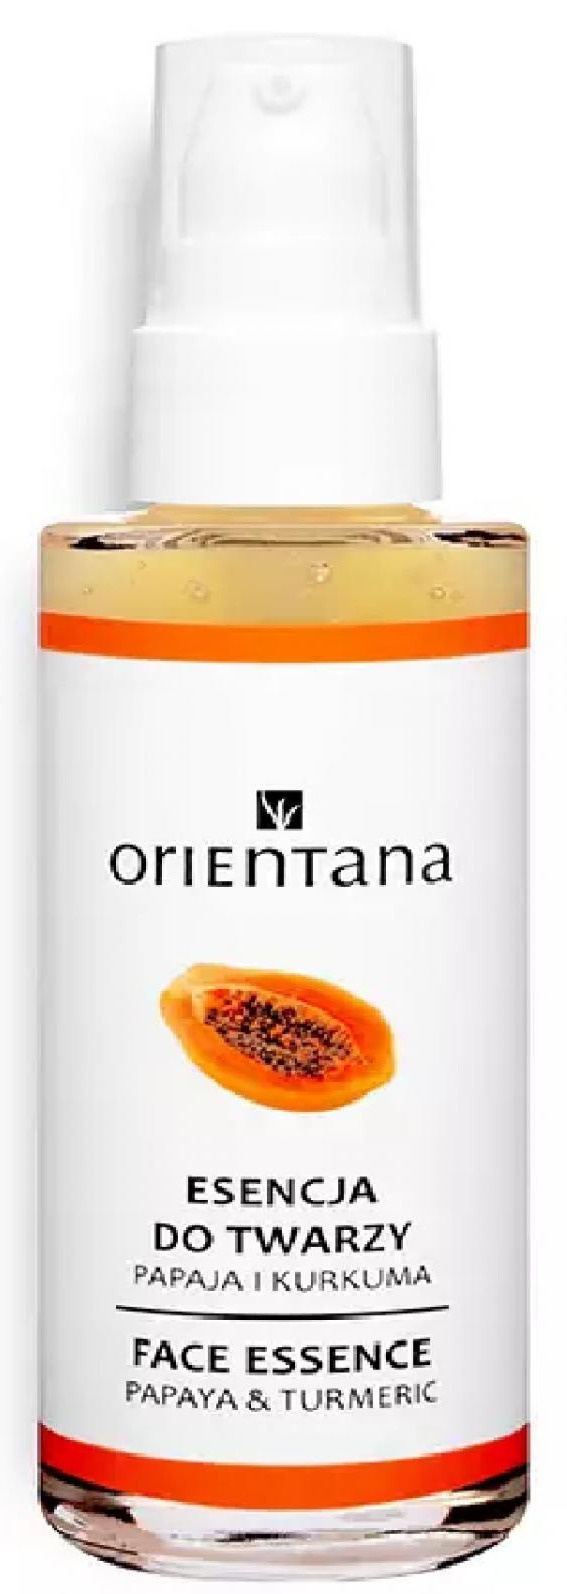 ORIENTANA Face Essence Papaya & Turmeric